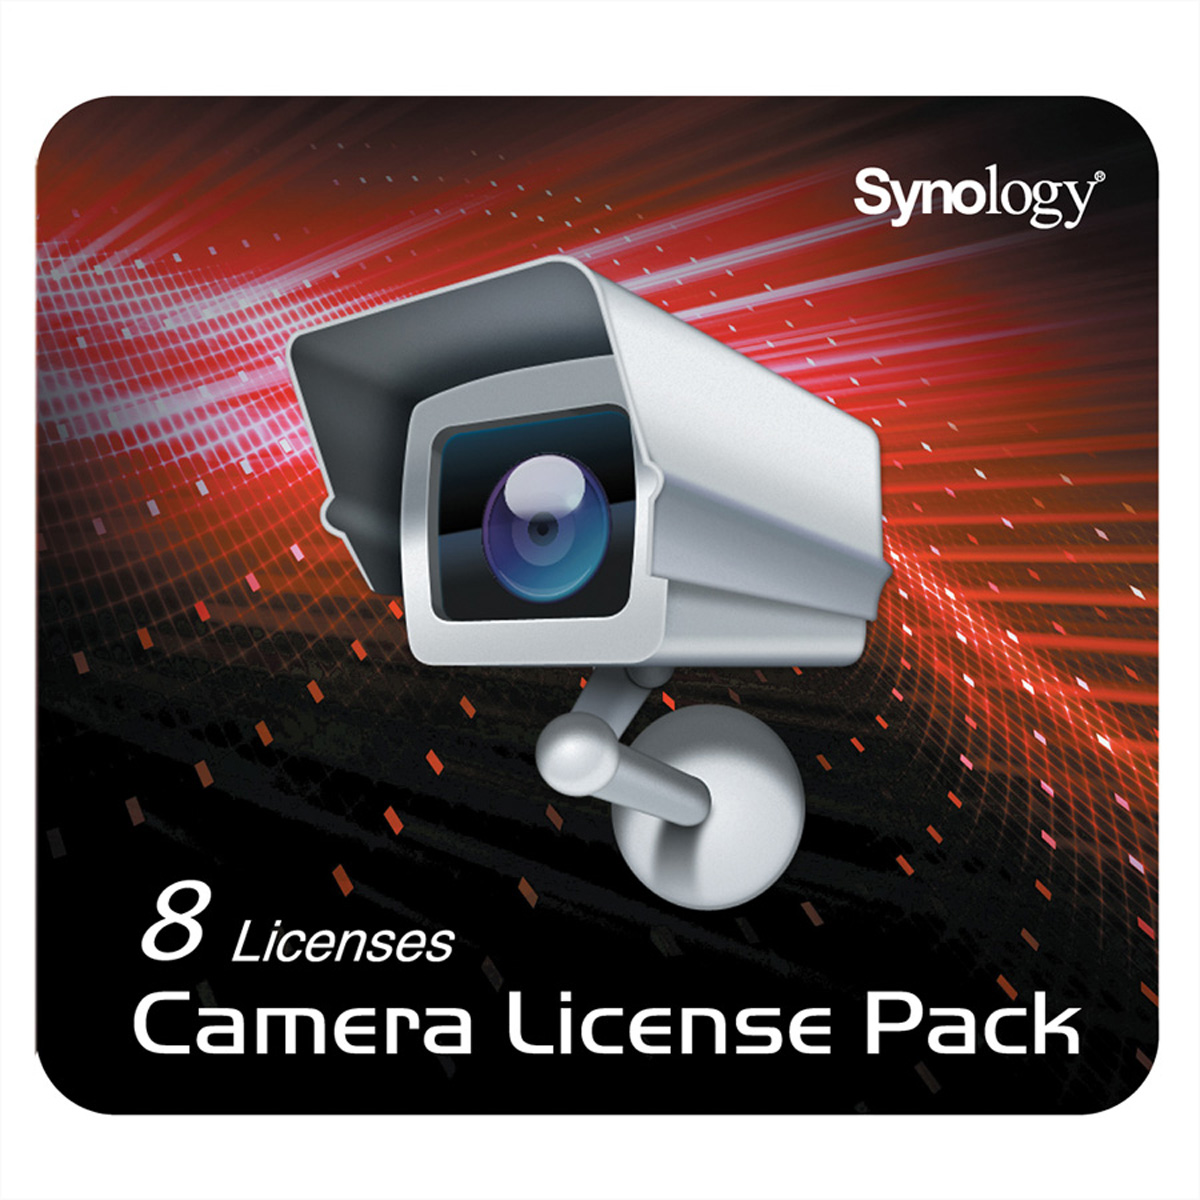 Synology Camera License Pack - Lizenz - 8 Kameras